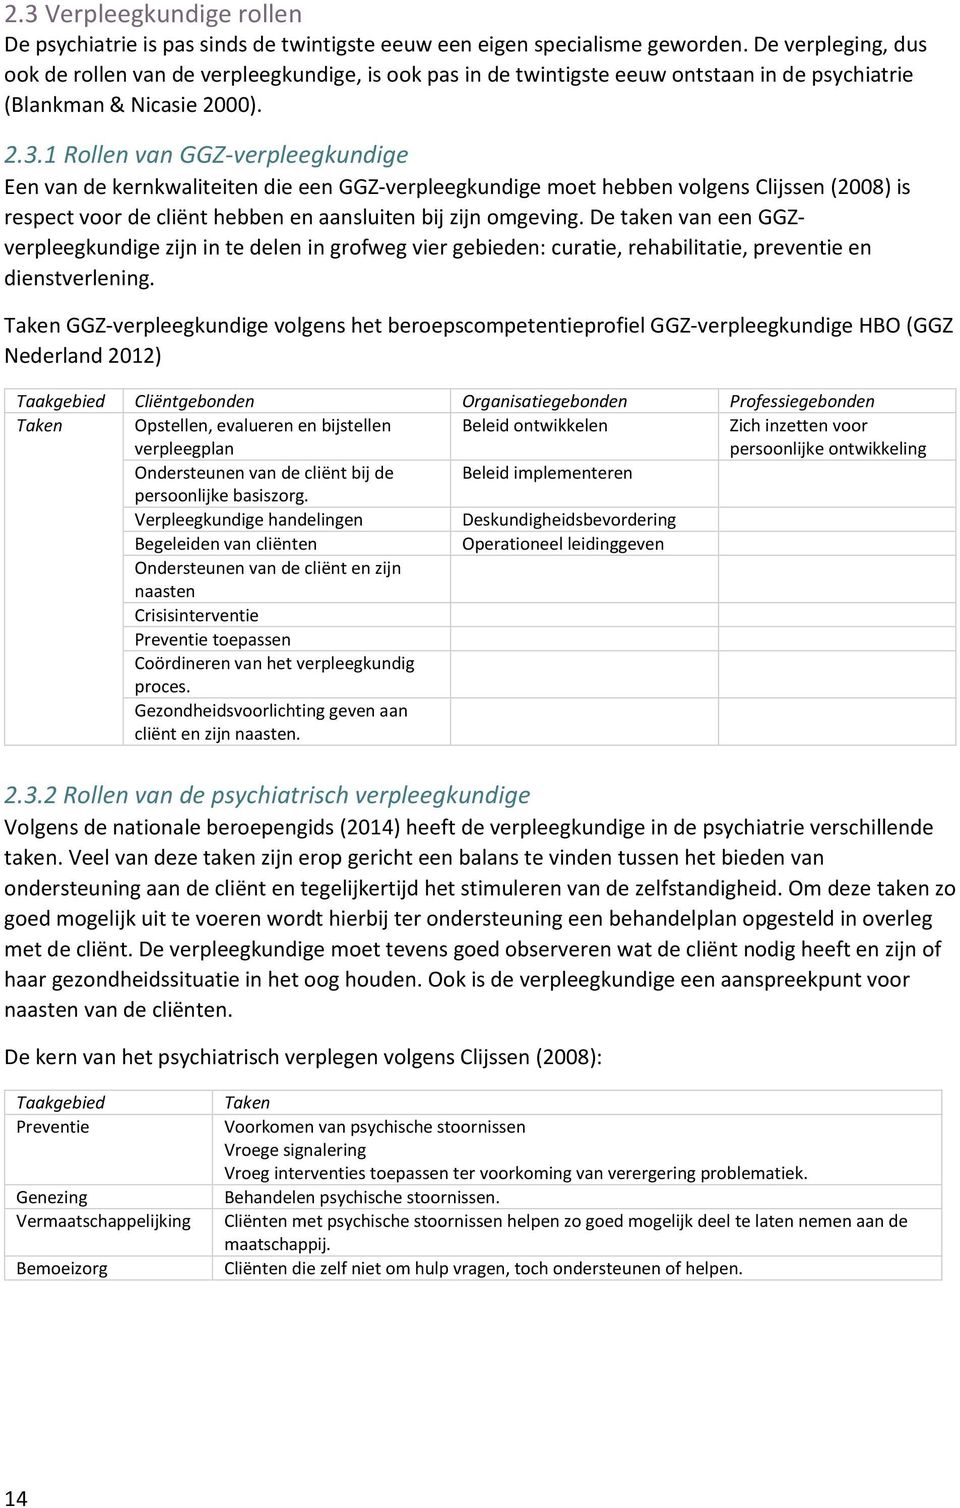 1 Rollen van GGZ-verpleegkundige Een van de kernkwaliteiten die een GGZ-verpleegkundige moet hebben volgens Clijssen (2008) is respect voor de cliënt hebben en aansluiten bij zijn omgeving.